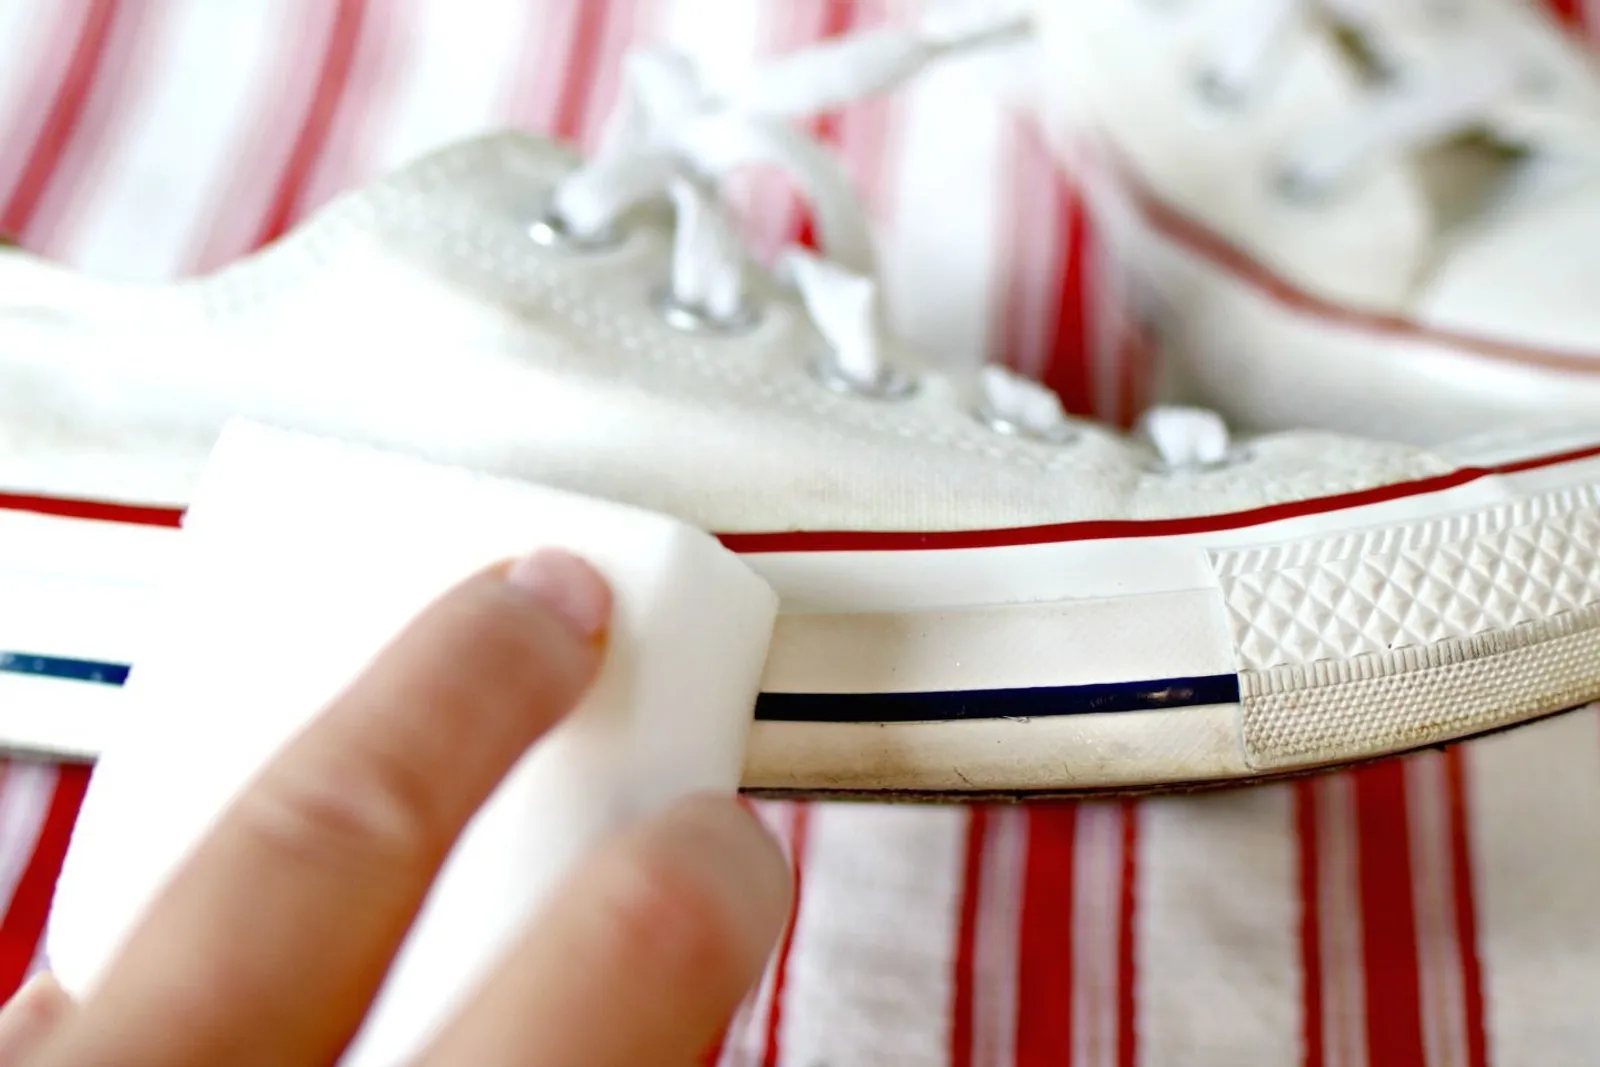 9 Cara Mencuci Sepatu Putih yang Benar, Bisa Dicoba!